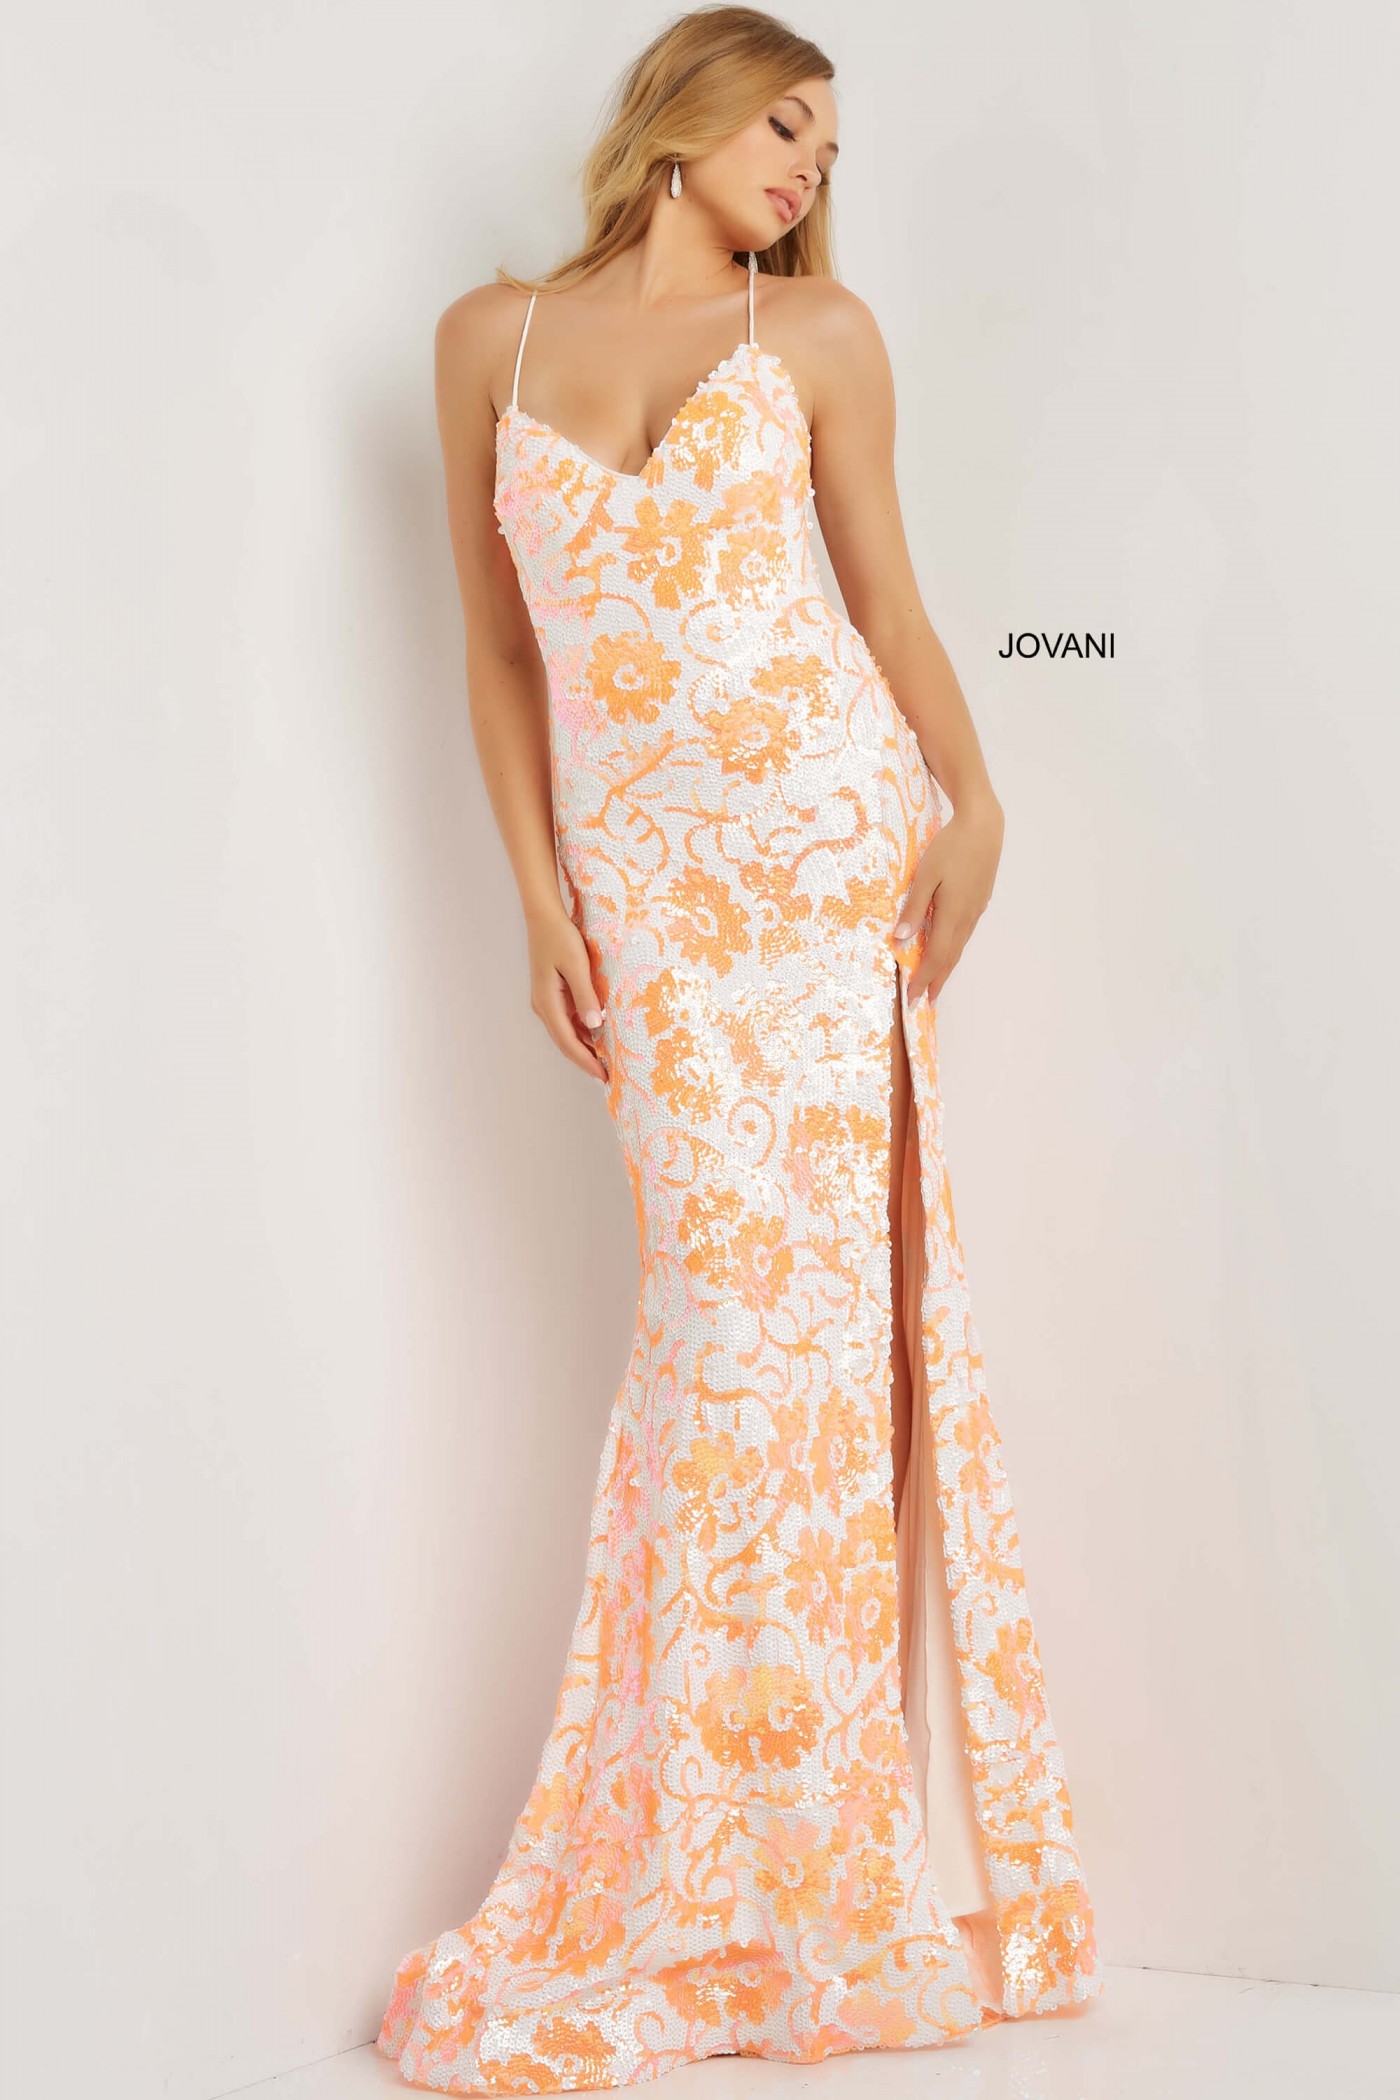 Jovani 08255 Floral Sequin Tie Back Prom Dress